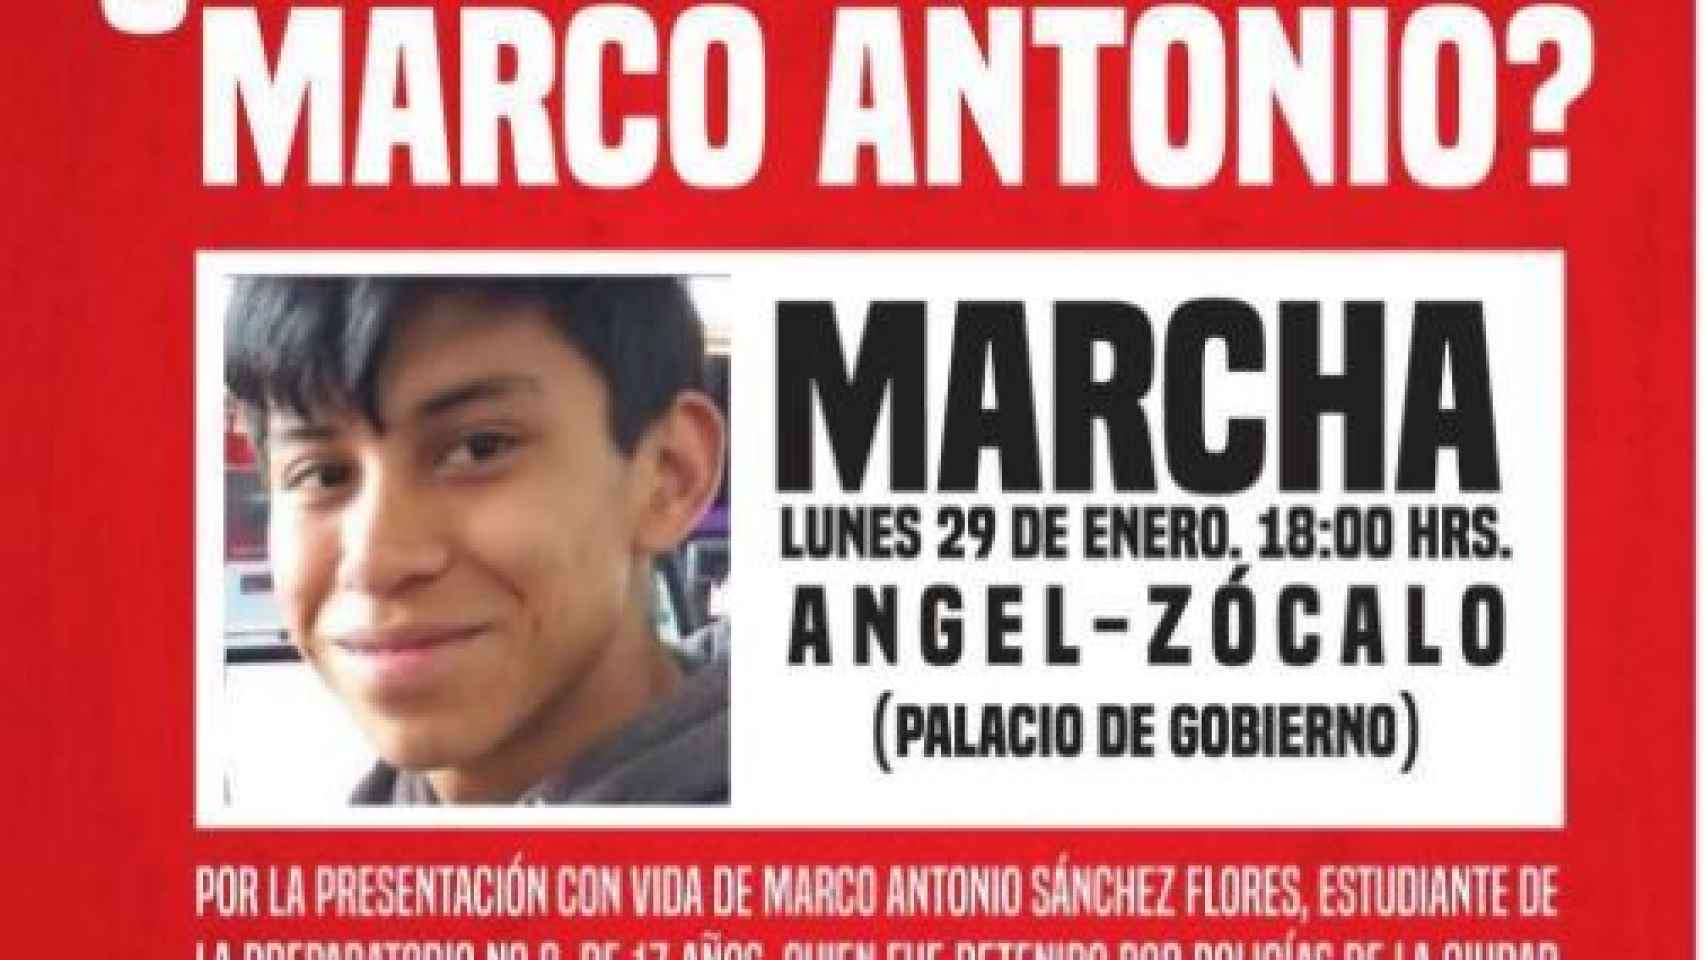 Convocatoria de protestas contra la desaparición del joven méxicano Marco Antonio.